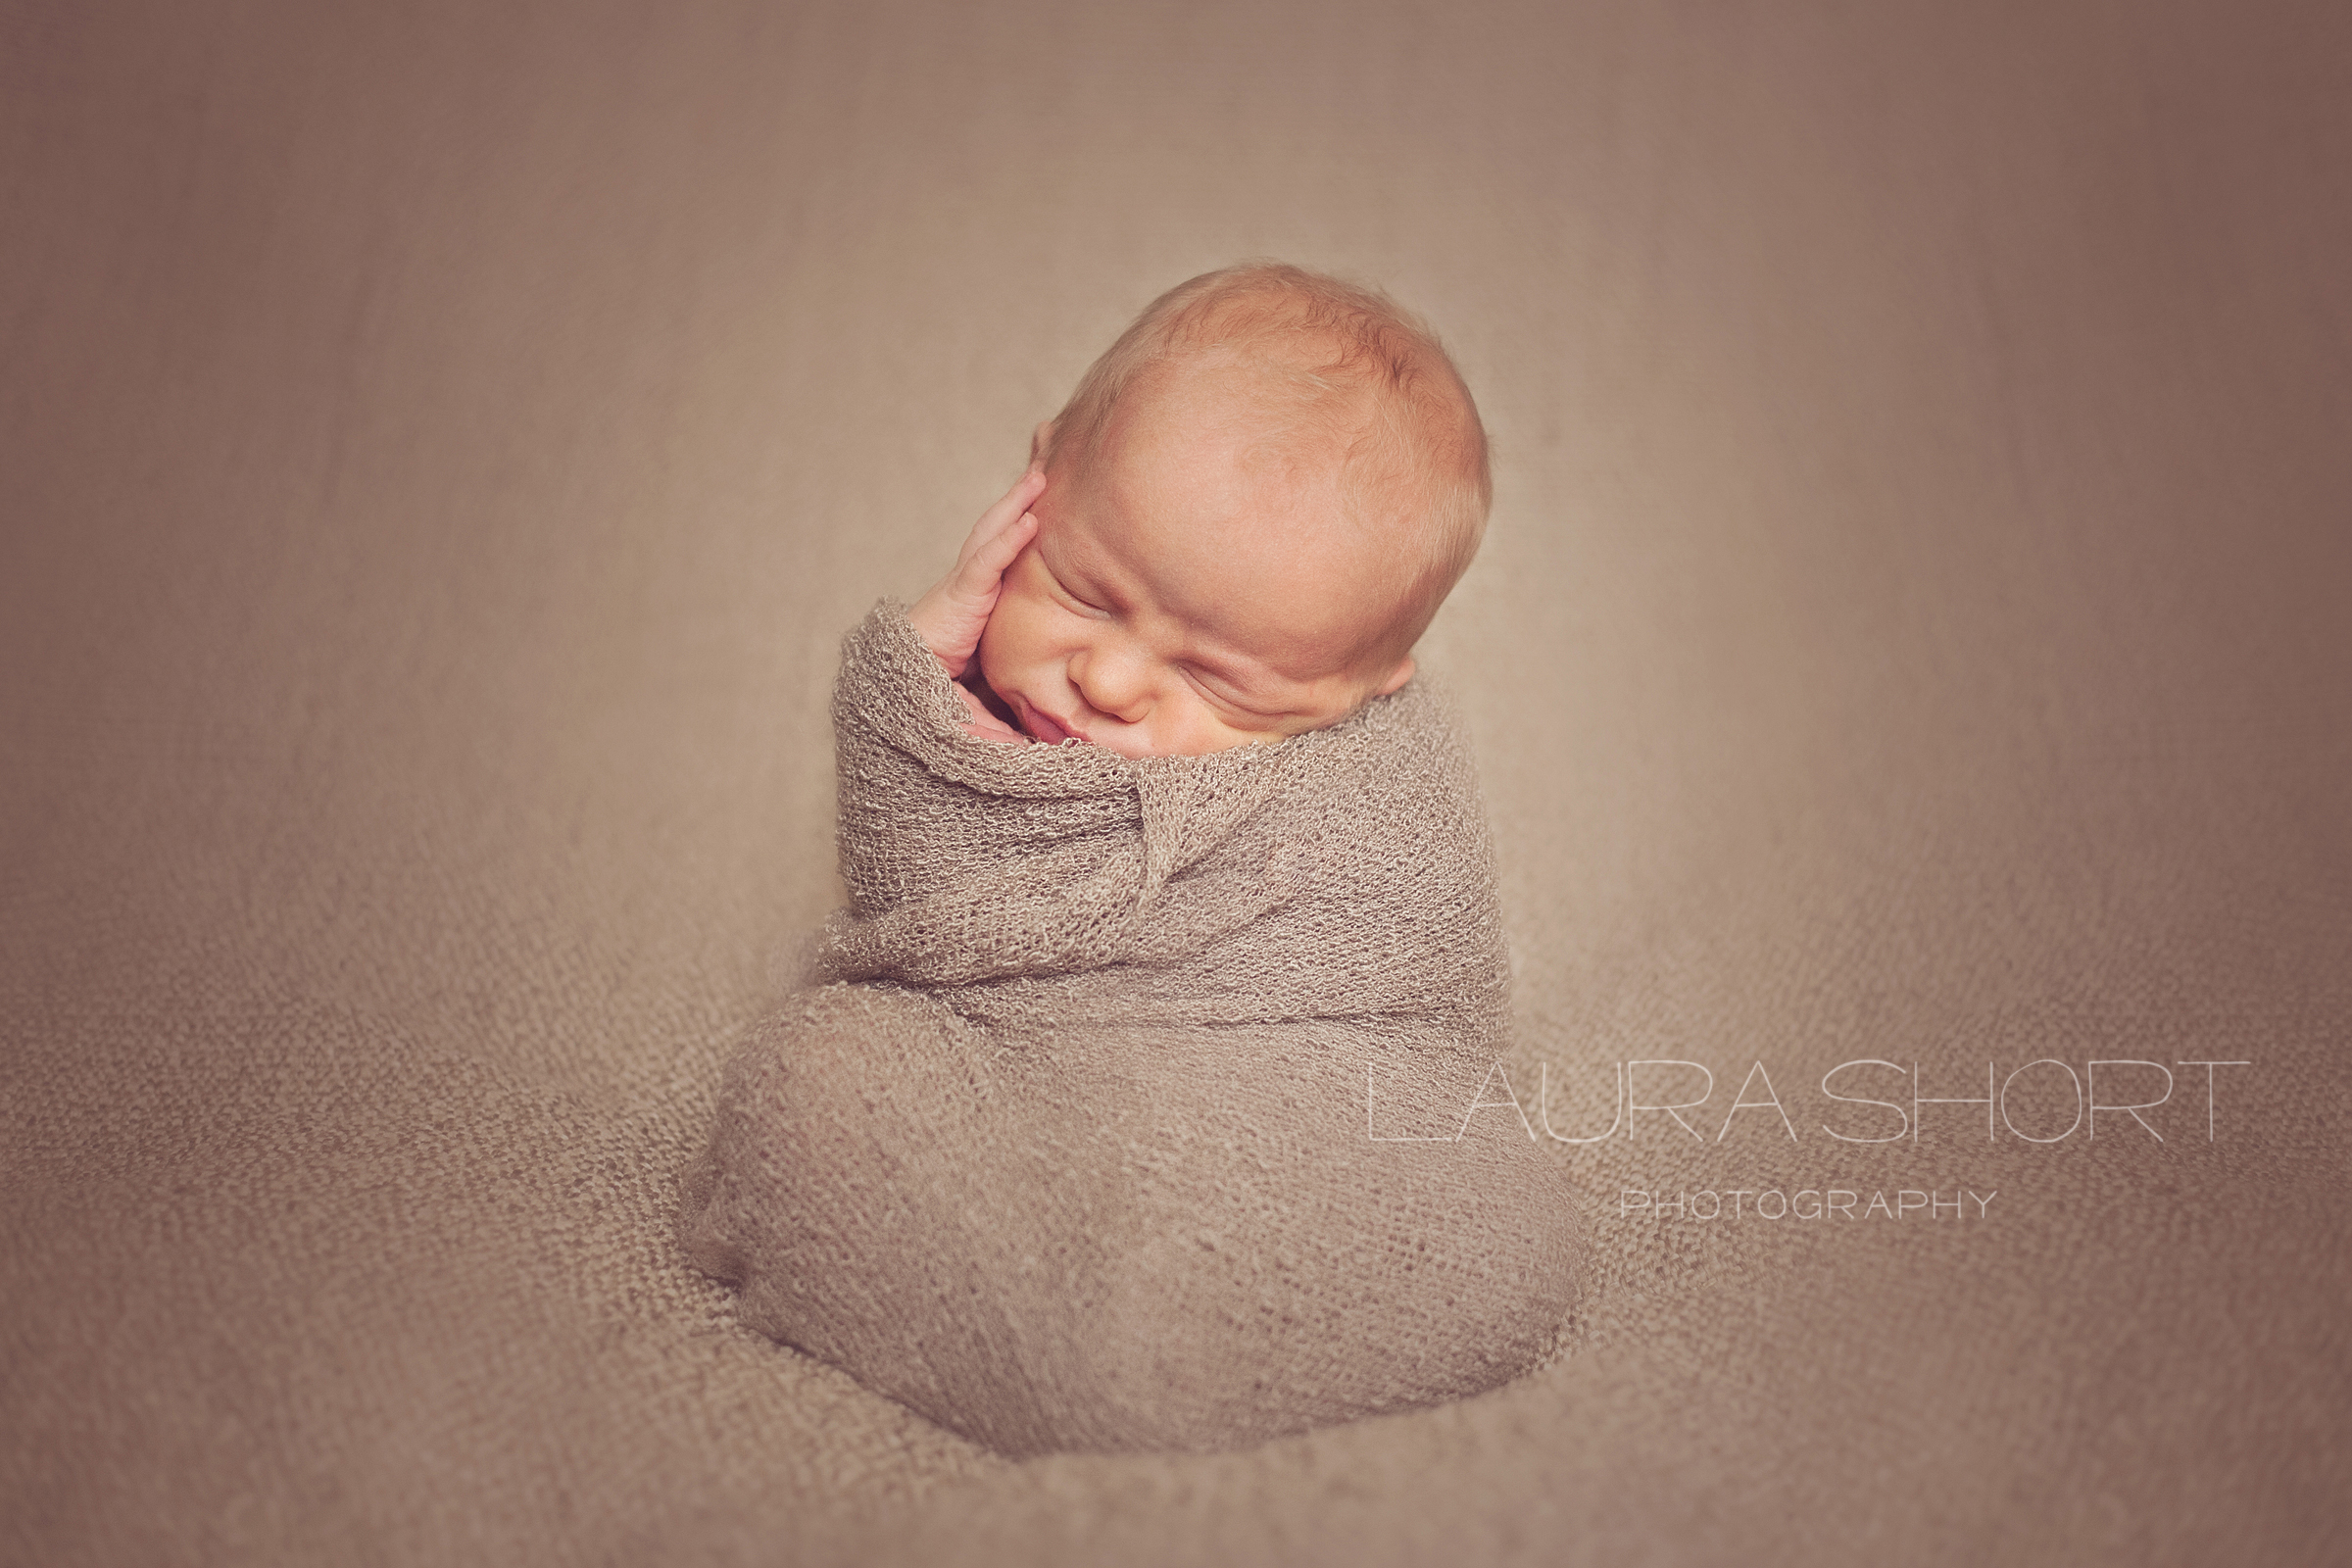 Baltimore-Newborn-Photographer-Laura-Short